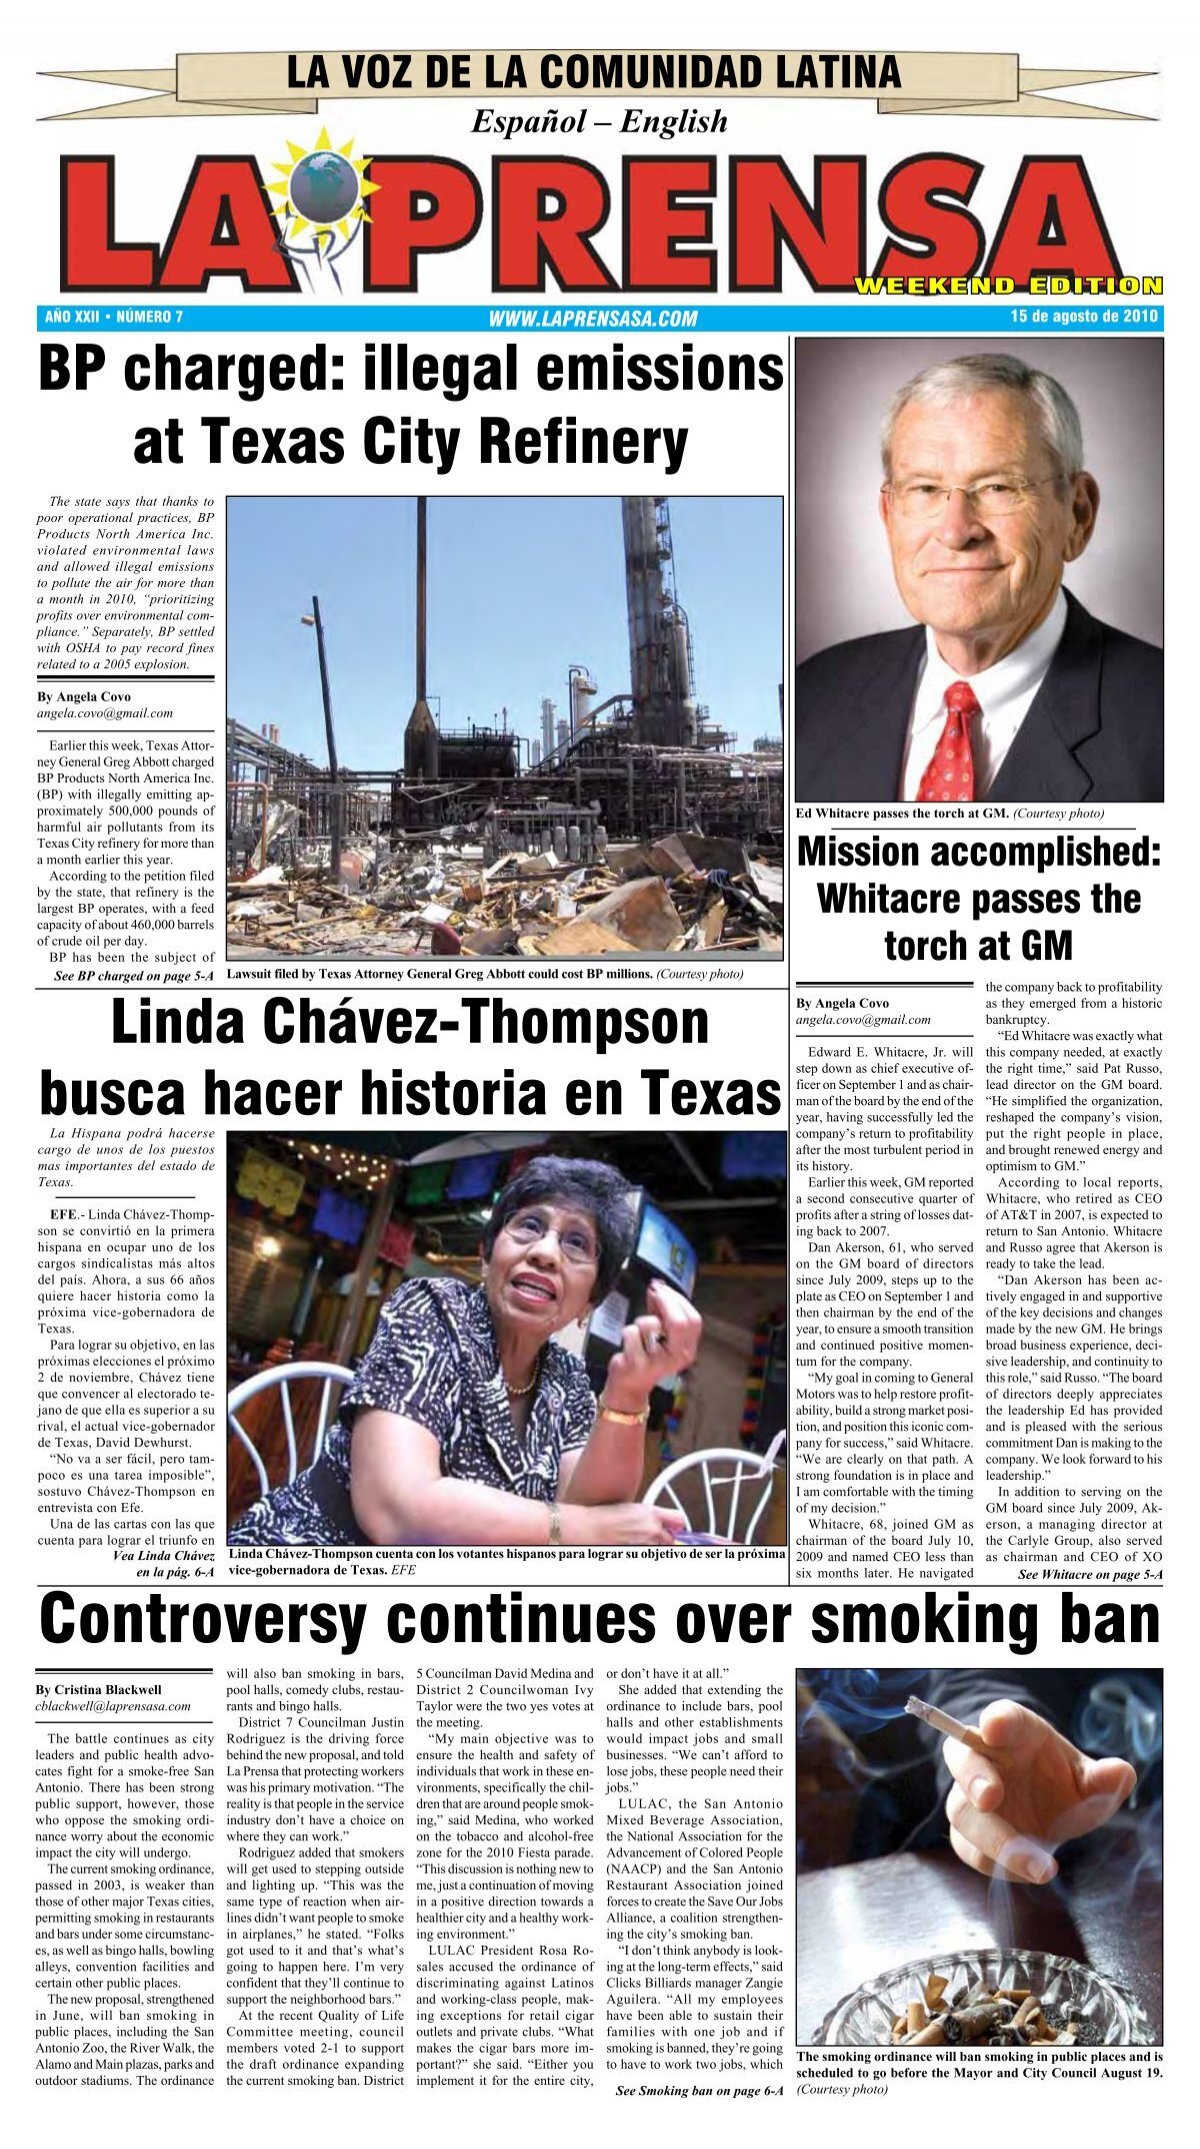 Controversy continues over smoking ban - La Prensa De San Antonio